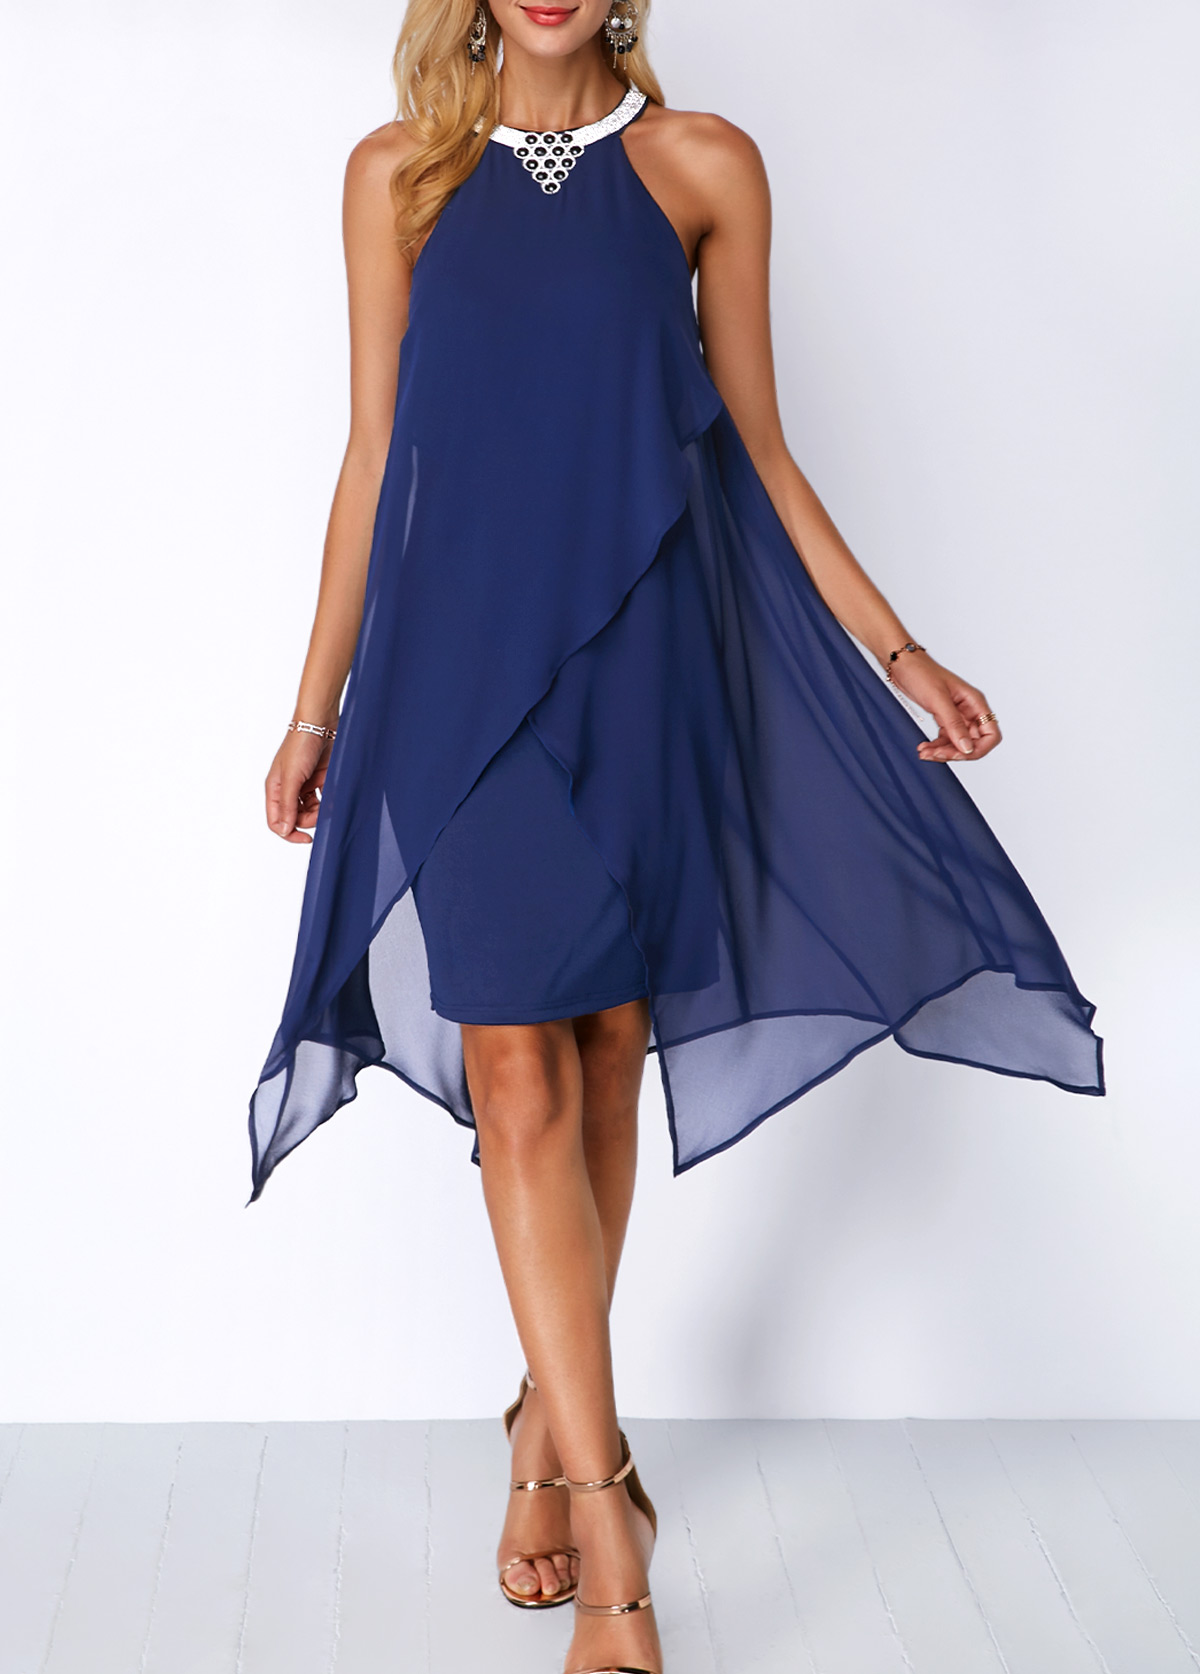 Blue Chiffon Overlay Embellished Neck Dress Usd 3559 